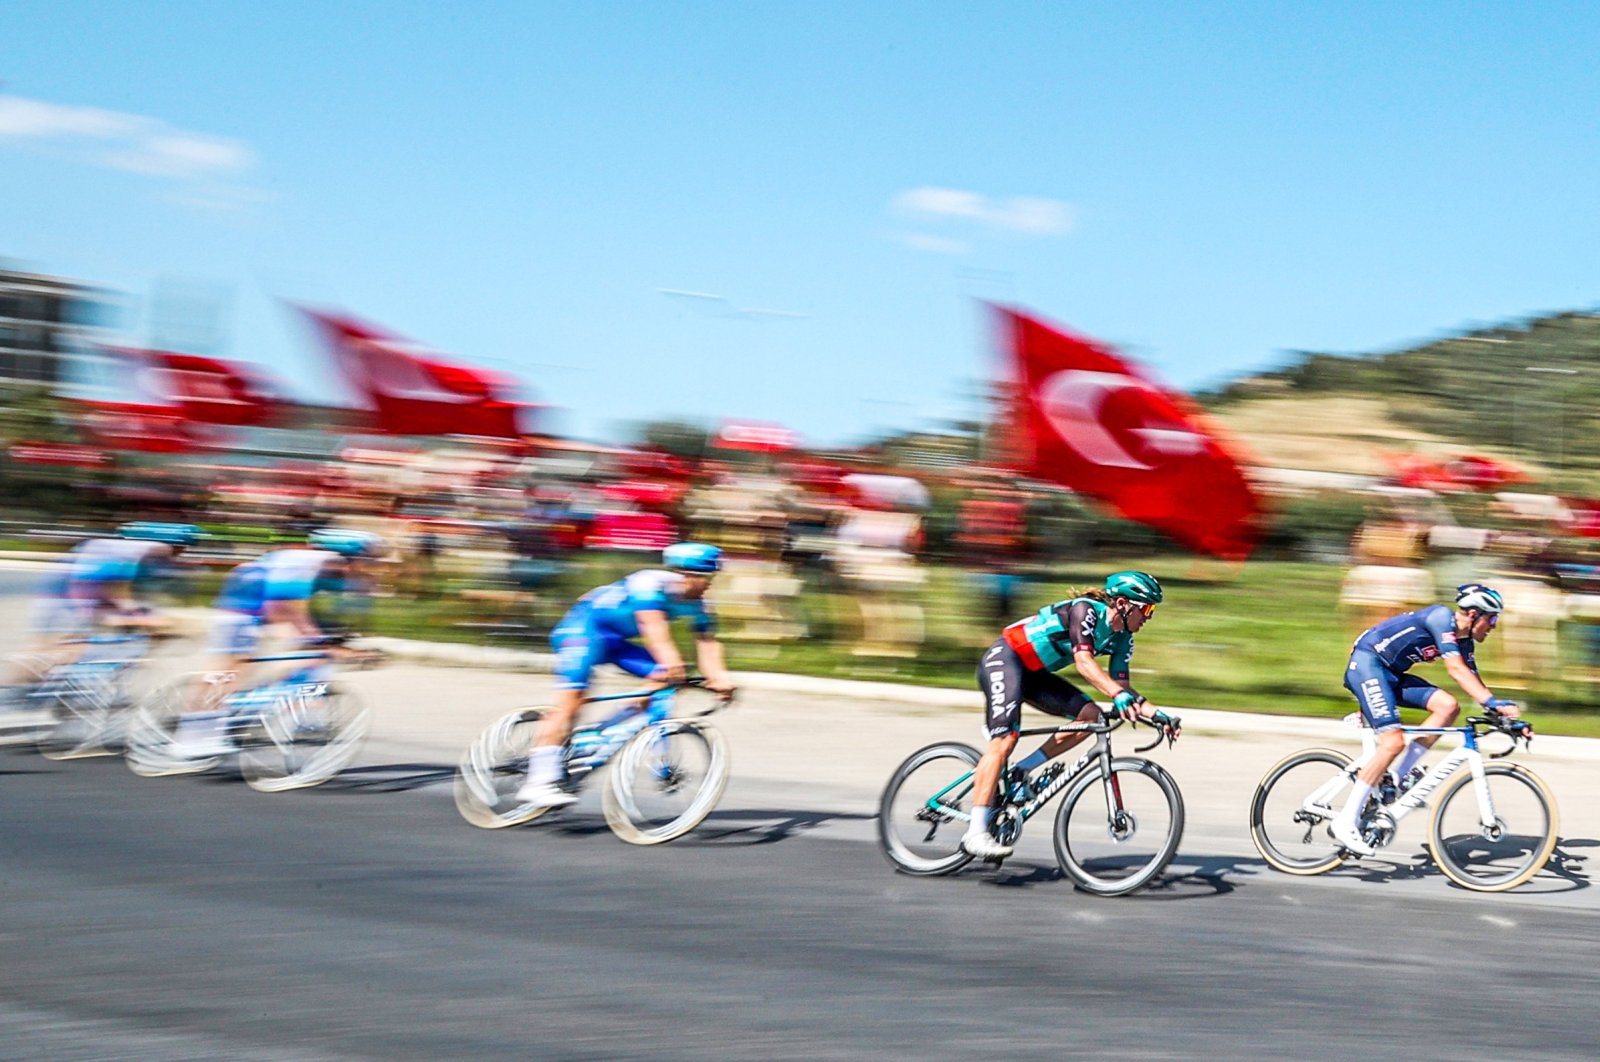 Tour of Türkiye merangkul teknologi saat pengendara sepeda mengayuh untuk NFT